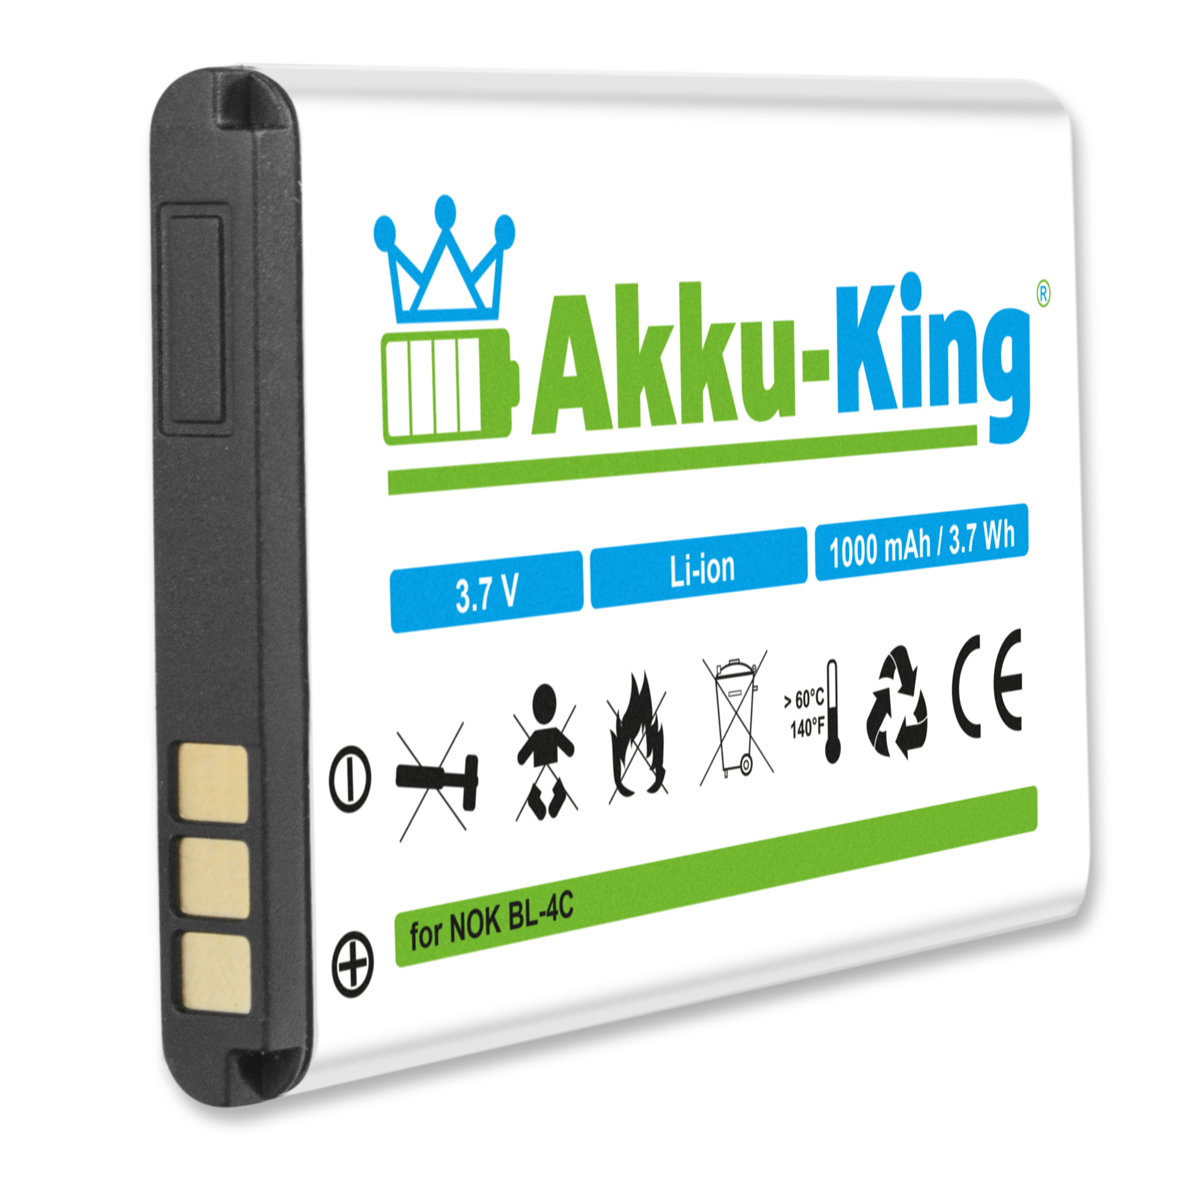 Handy-Akku, 3.7 Li-Ion AKKU-KING kompatibel XYP1110007704 Akku mit Doro Volt, 1000mAh